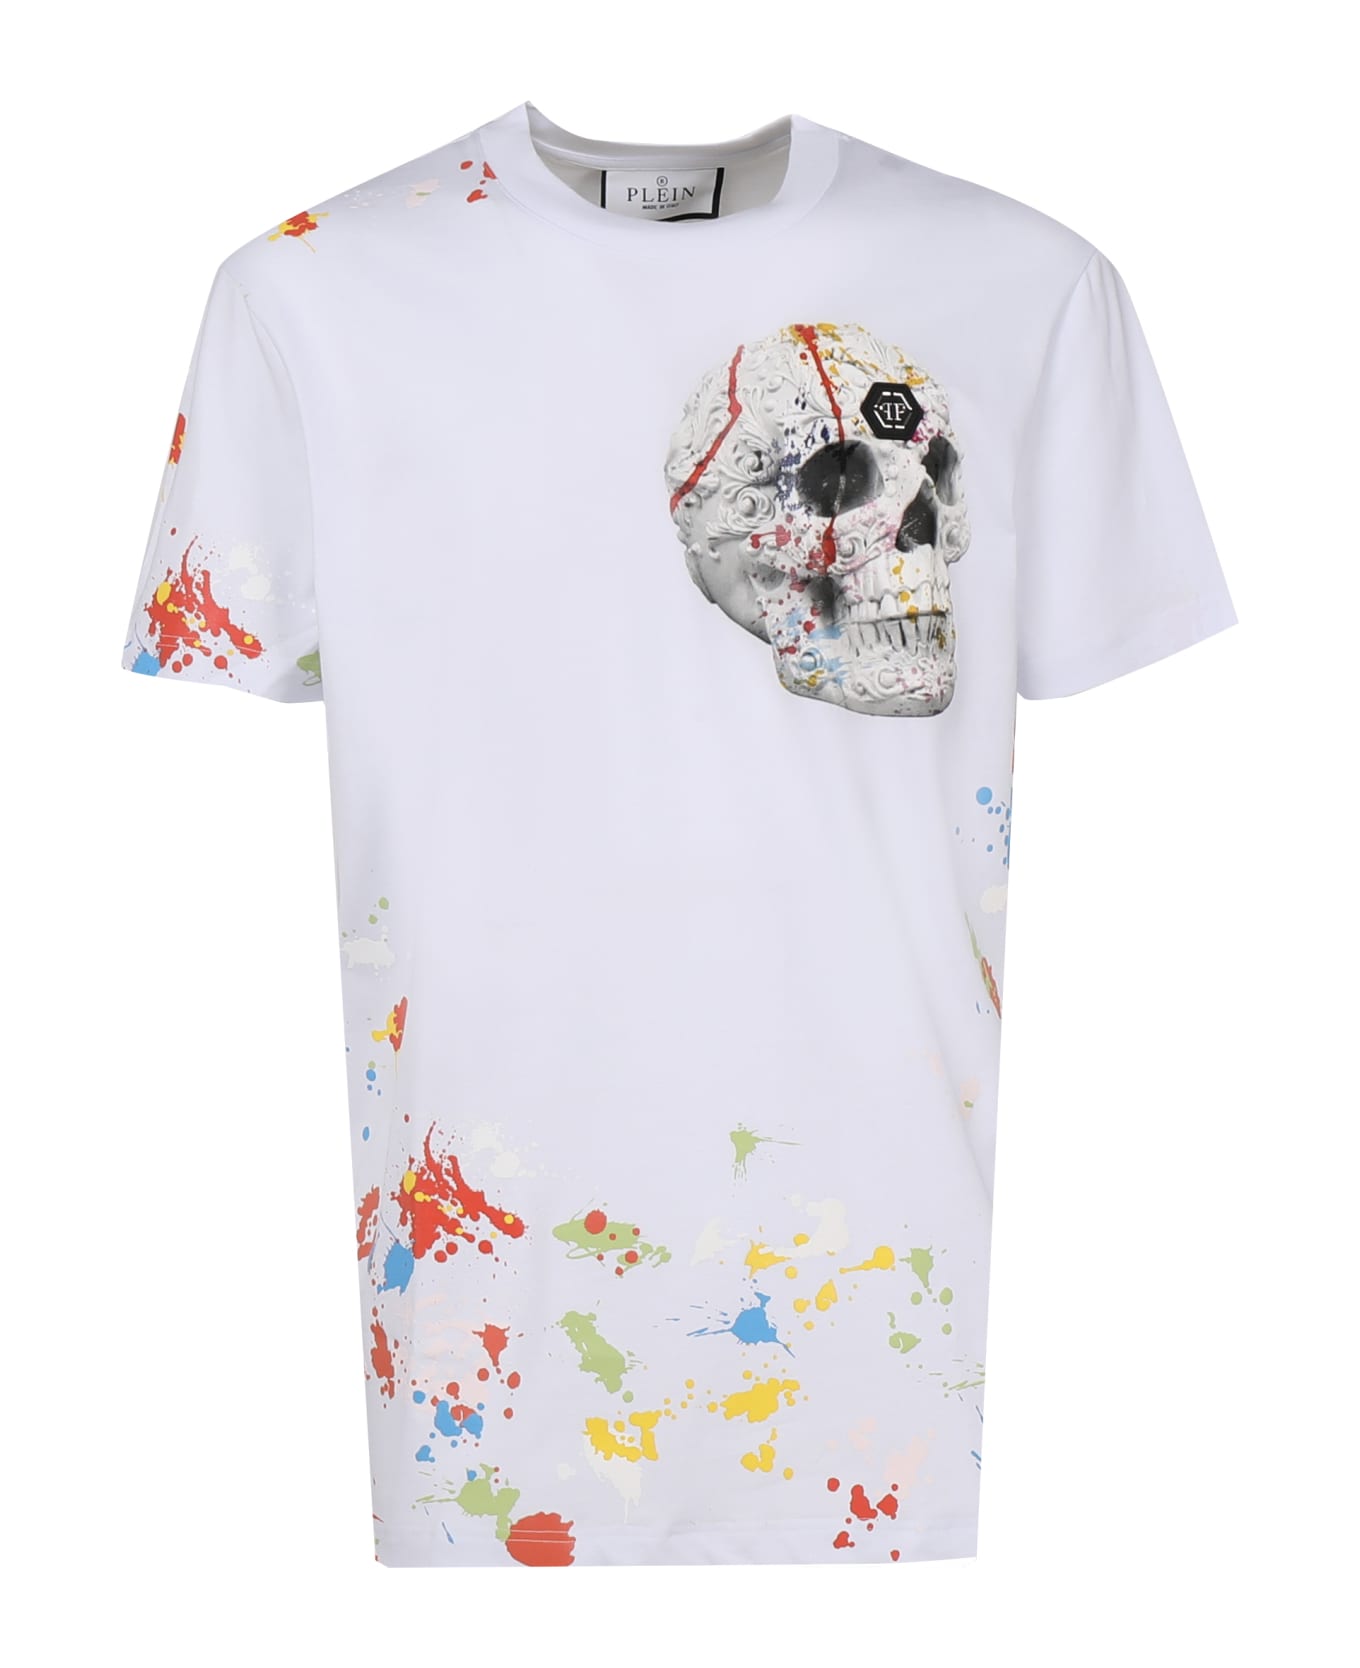 Philipp Plein Splatter Skull T-shirt - White